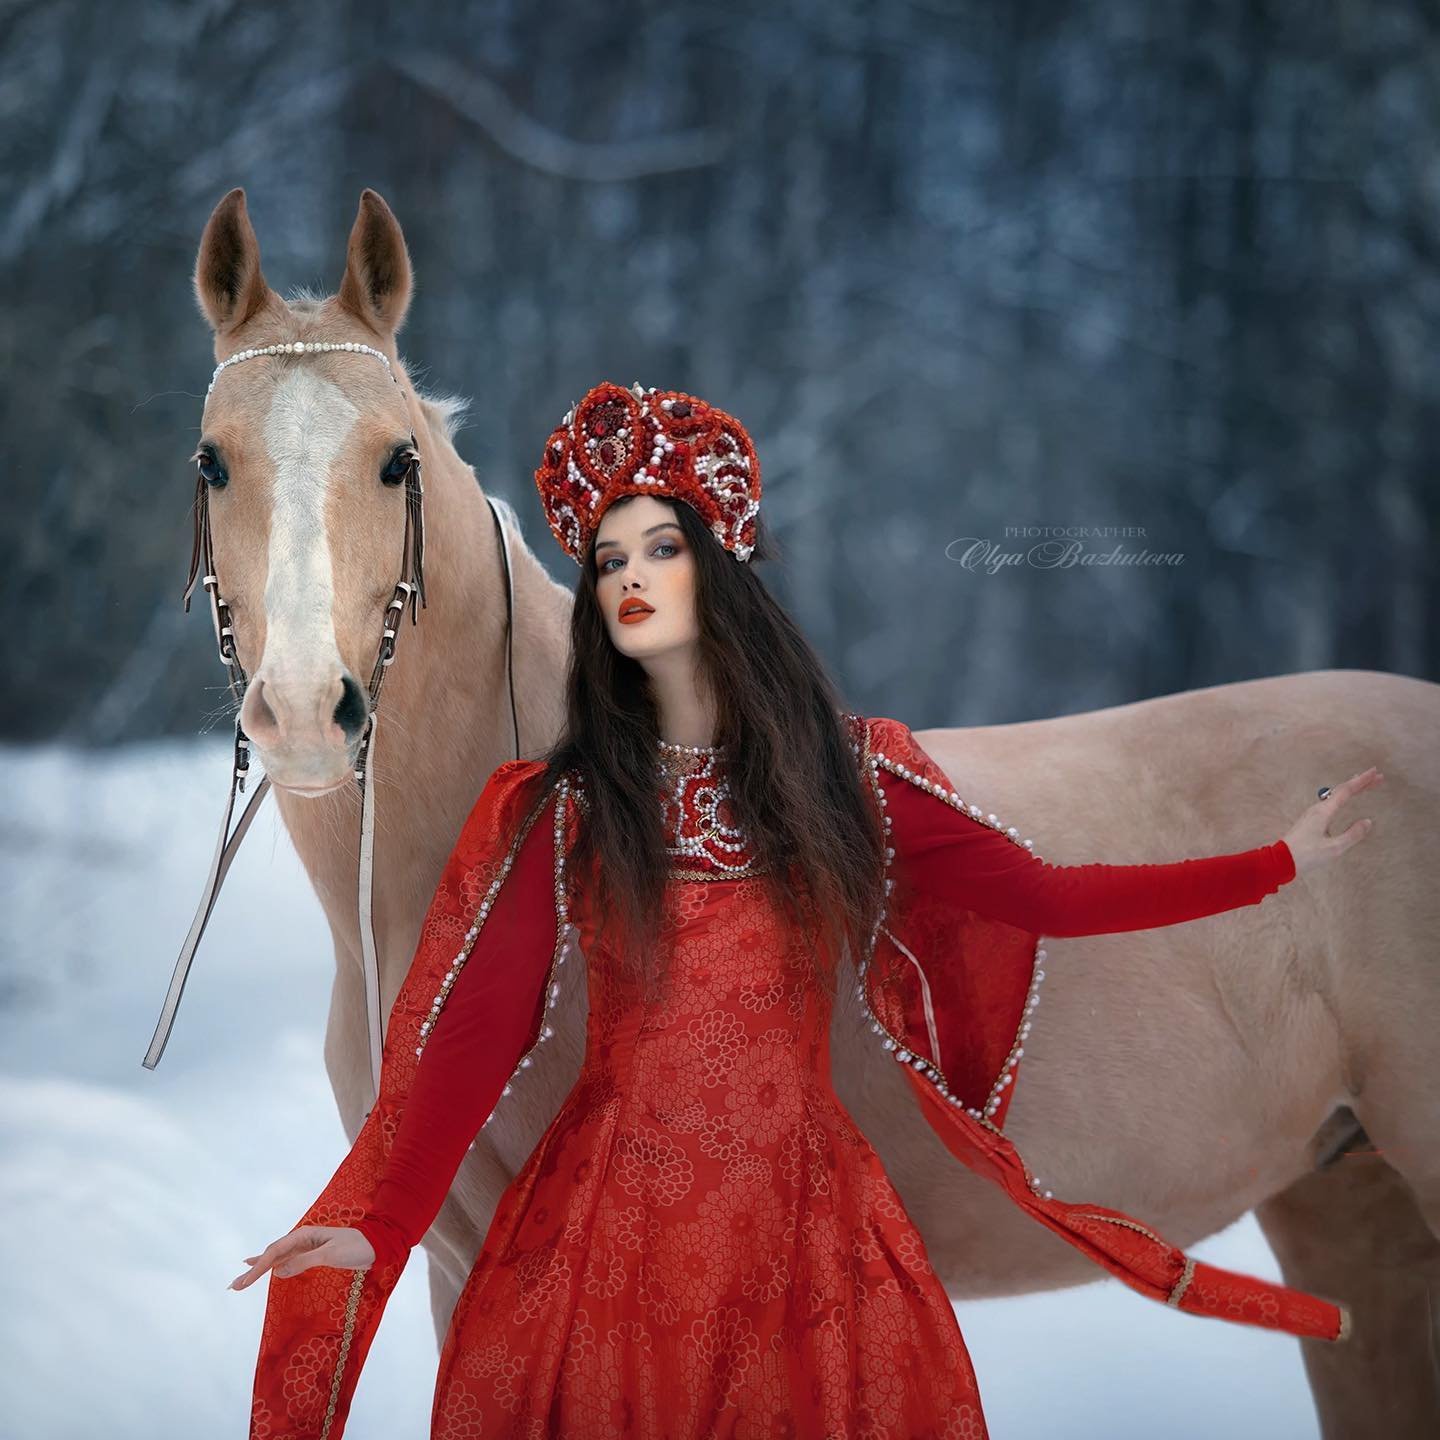 Olga Bazhutova fotografia equestre - Modelo posando com cavalo na neve de figurino vermelho